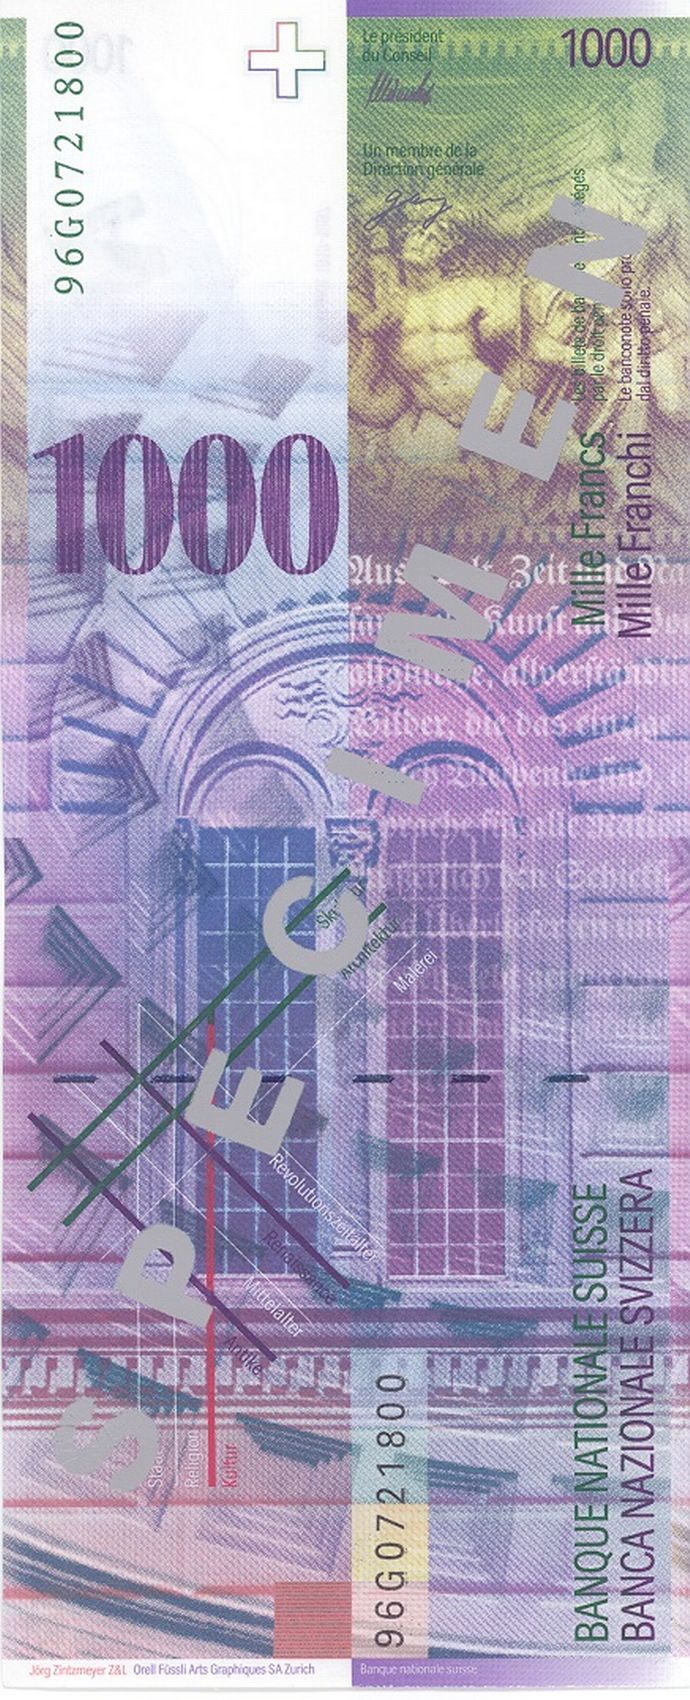 banknote_widget_series_8_design_denomination_1000_back.n.jpg